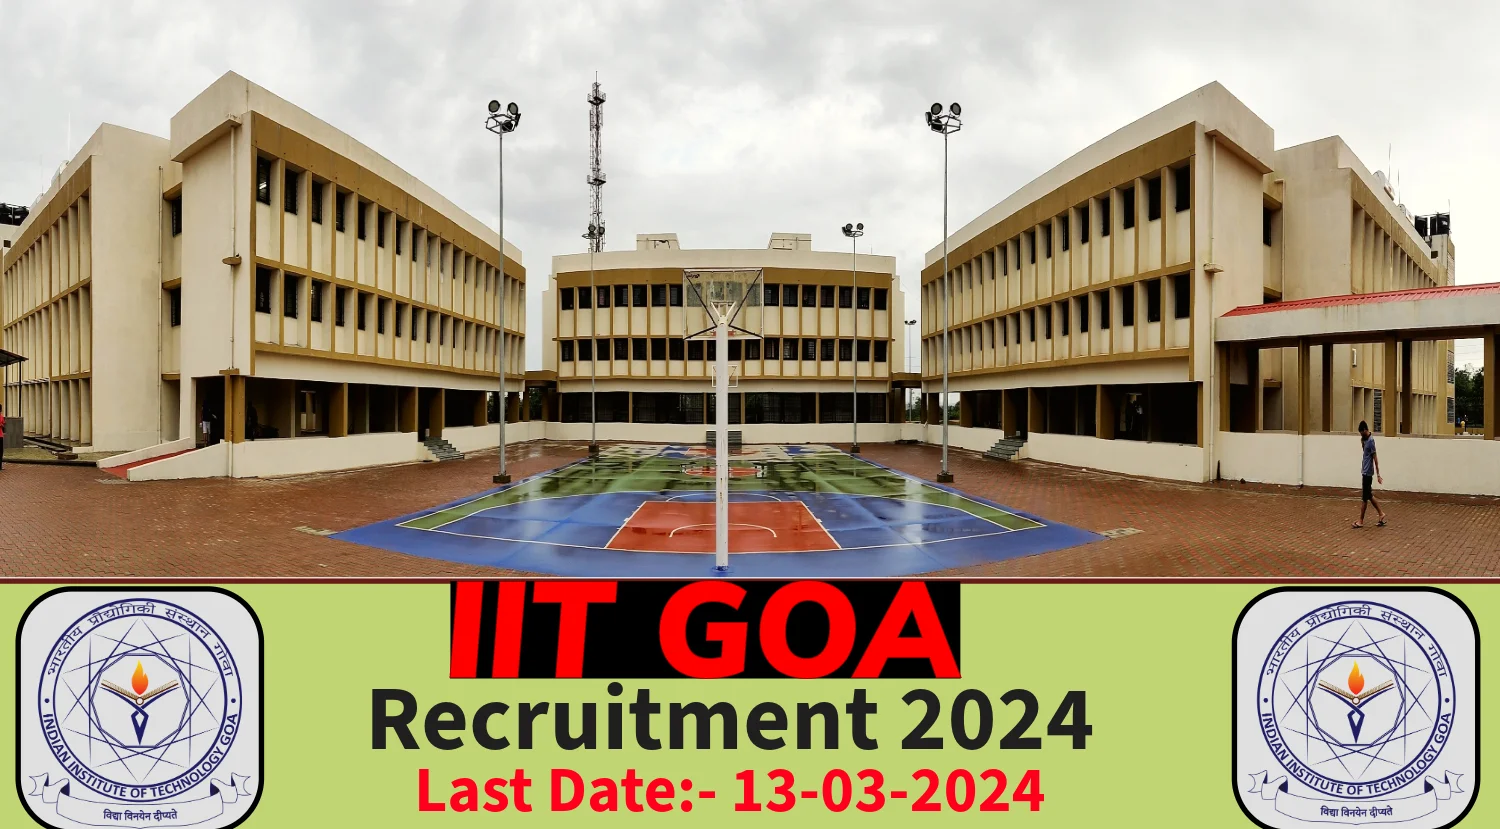 IIT GOA Recruitment 2024